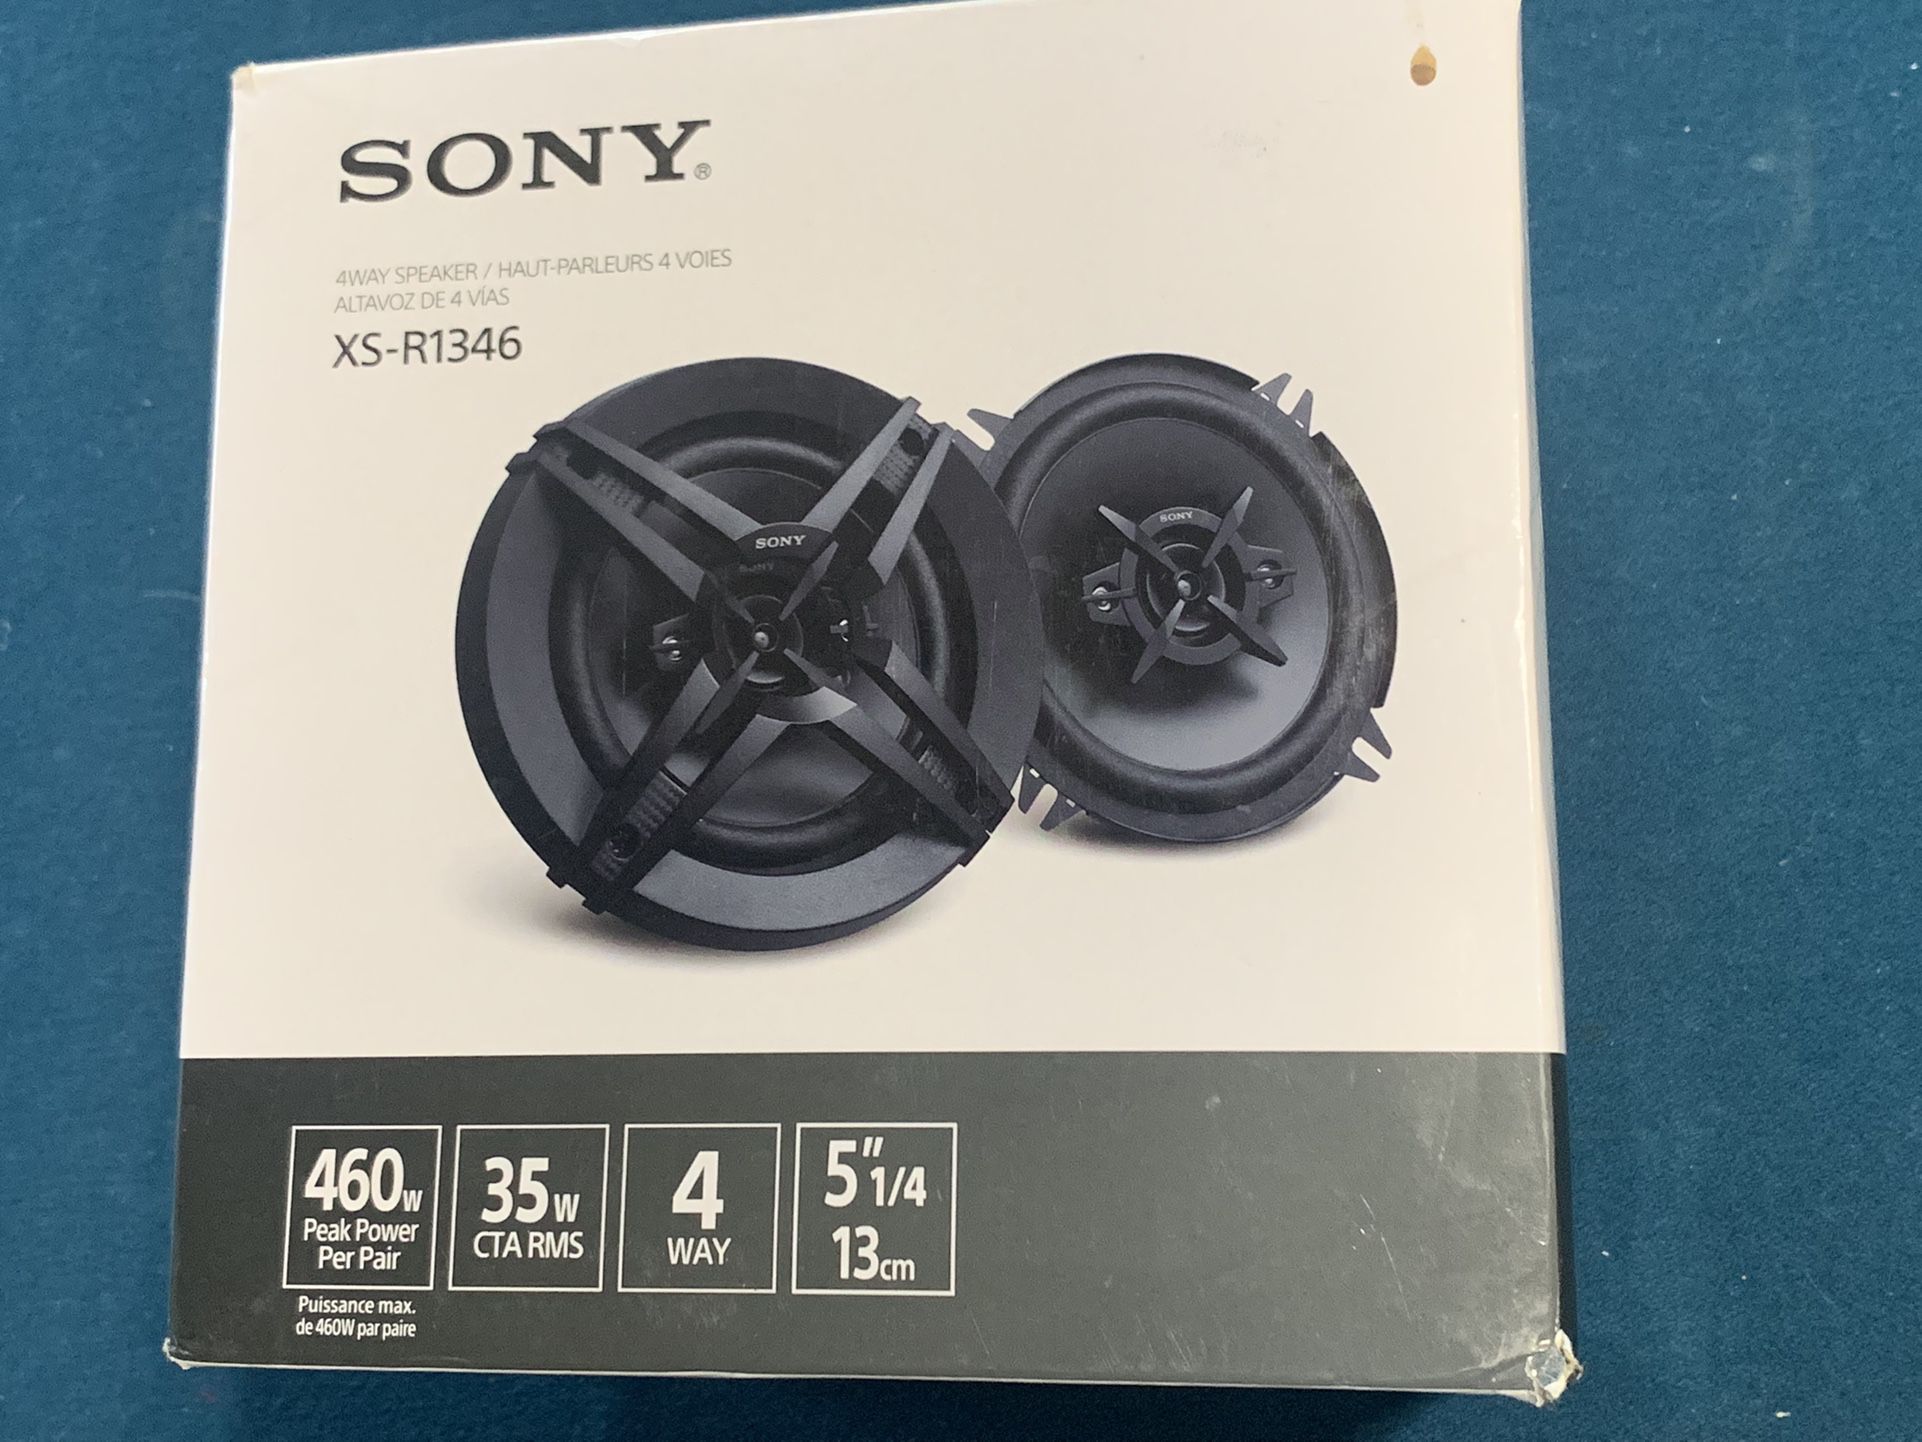 Sony 460 watt Car Speaker